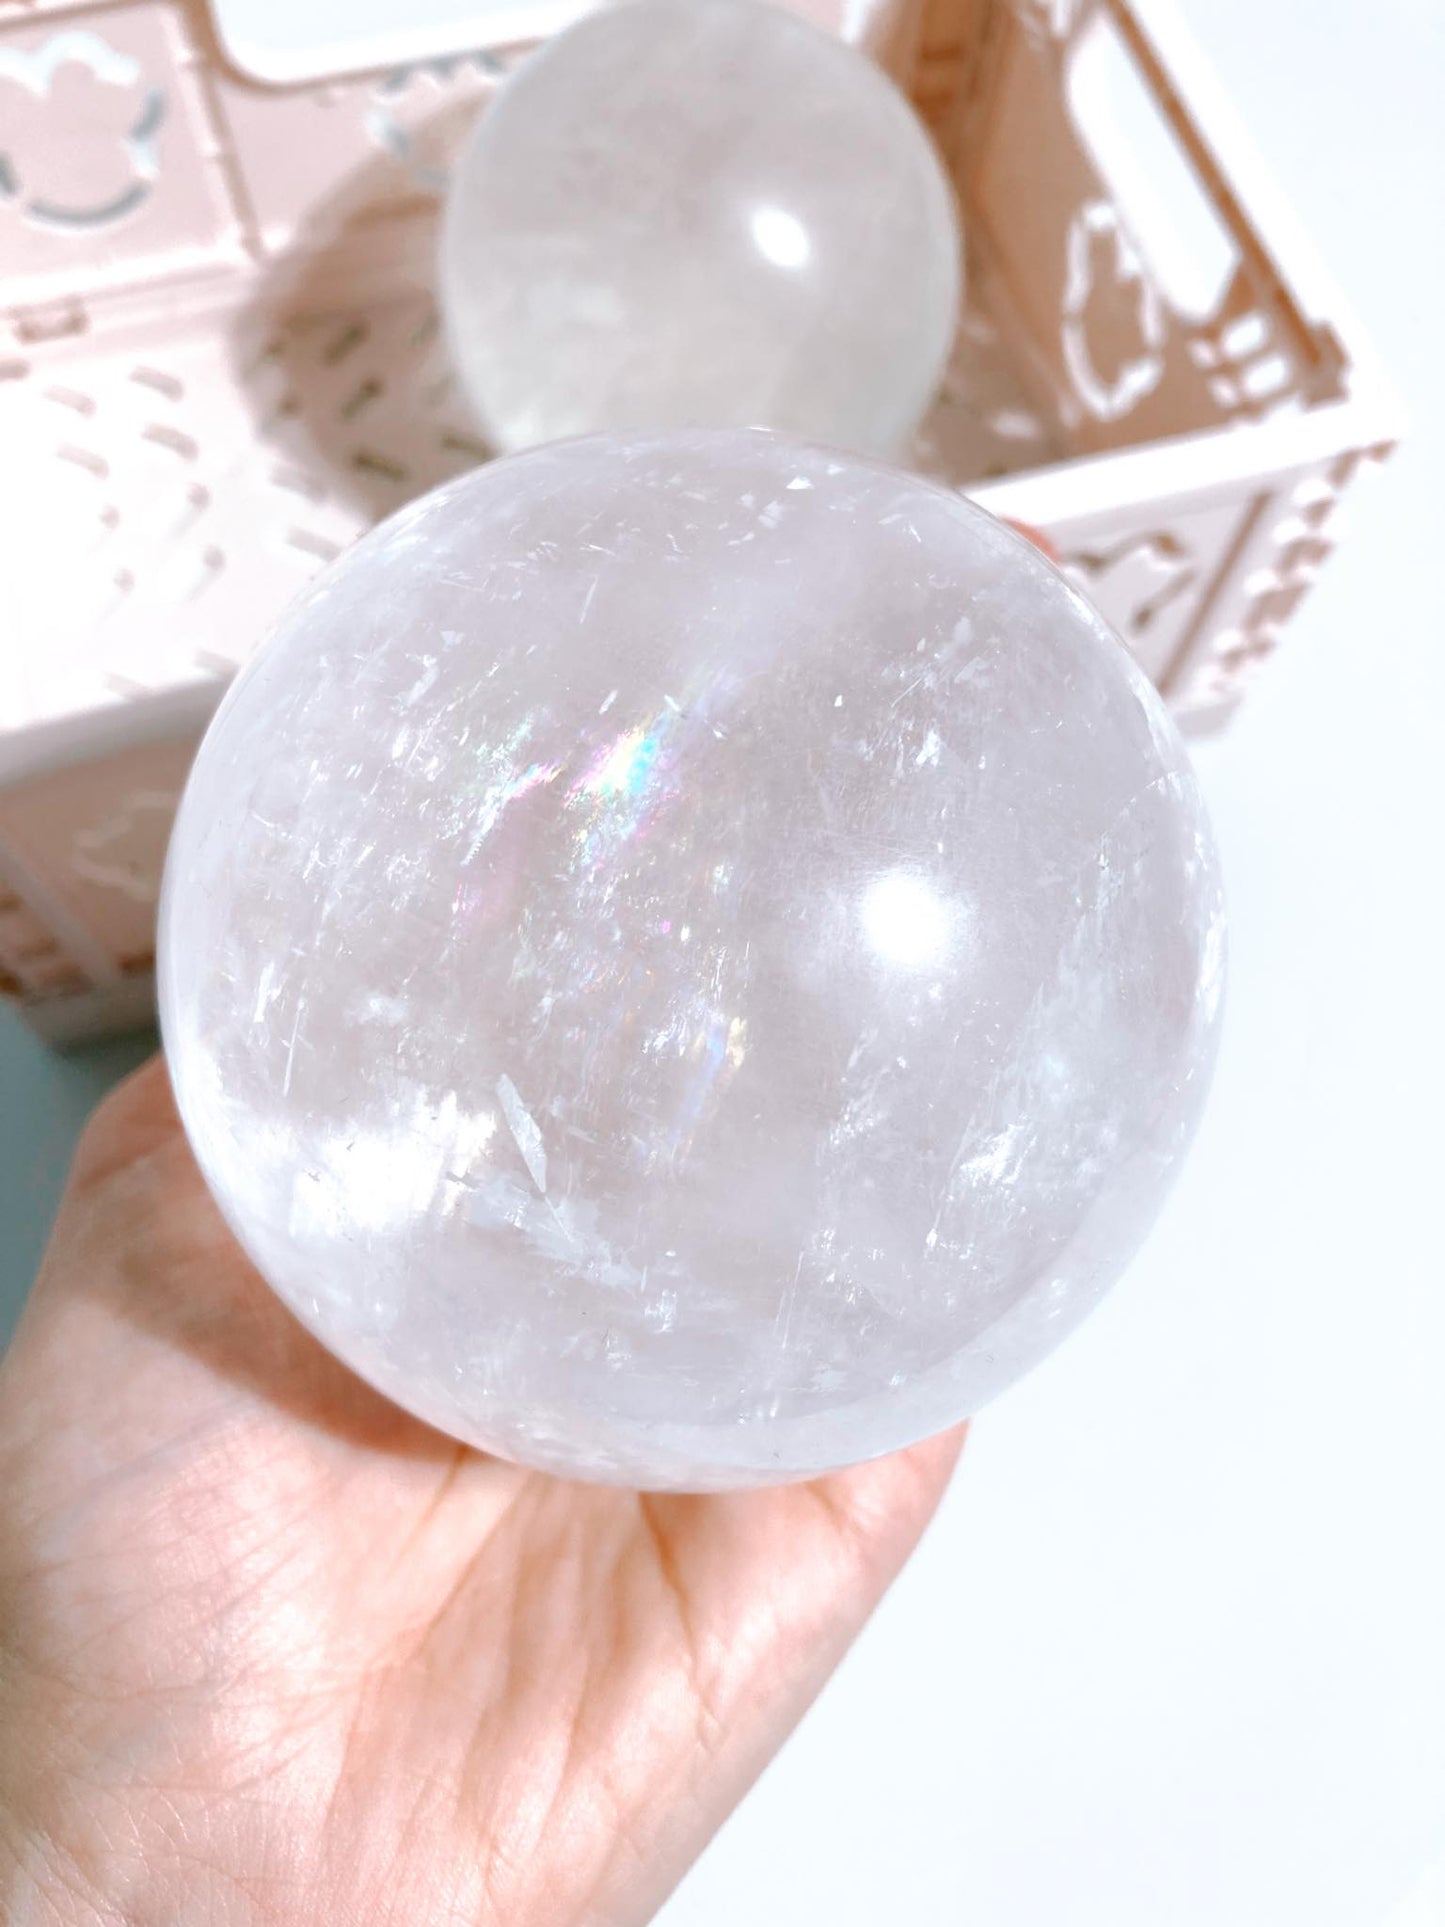 Weisse Calcit Kugel mit Regenbögen / White Calcite Sphere with Rainbows ca. 9 cm / 900g - aus Mexiko High Quality